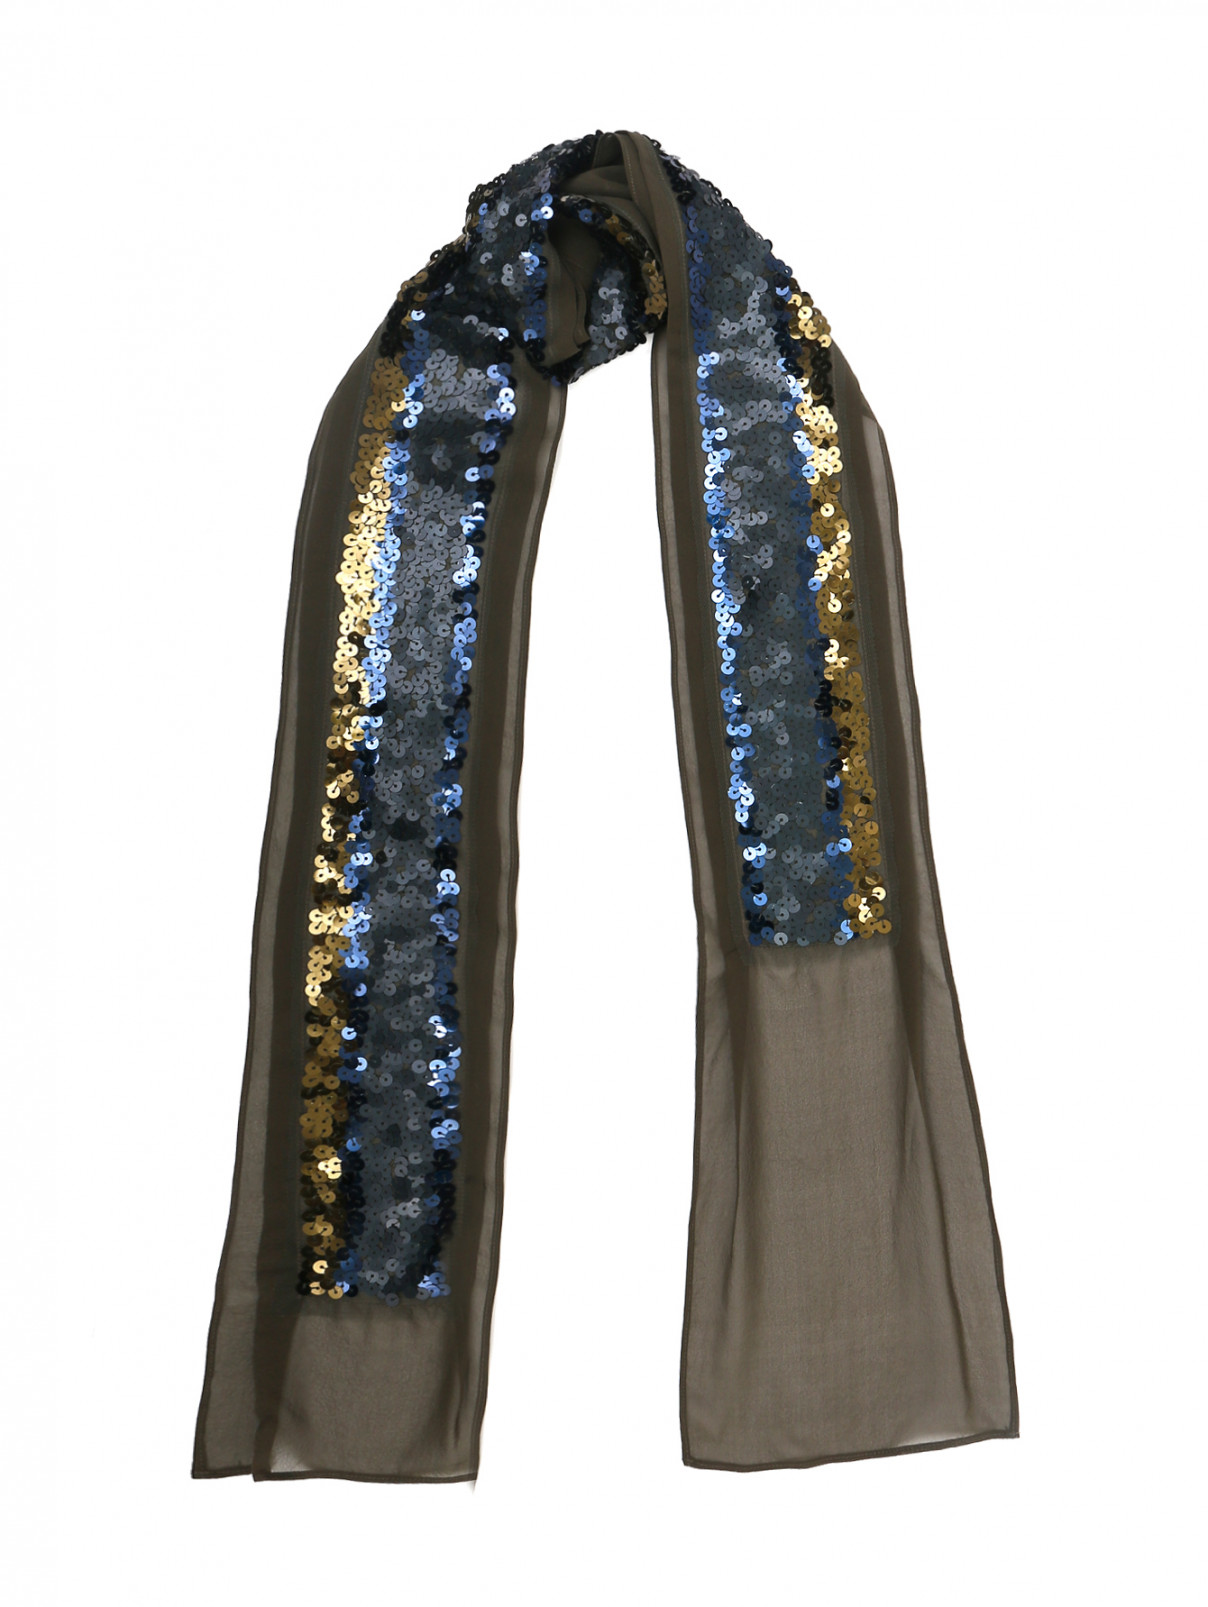 Узкий шарф из шелка декорированный пайетками Dorothee Schumacher  –  Общий вид  – Цвет:  Зеленый